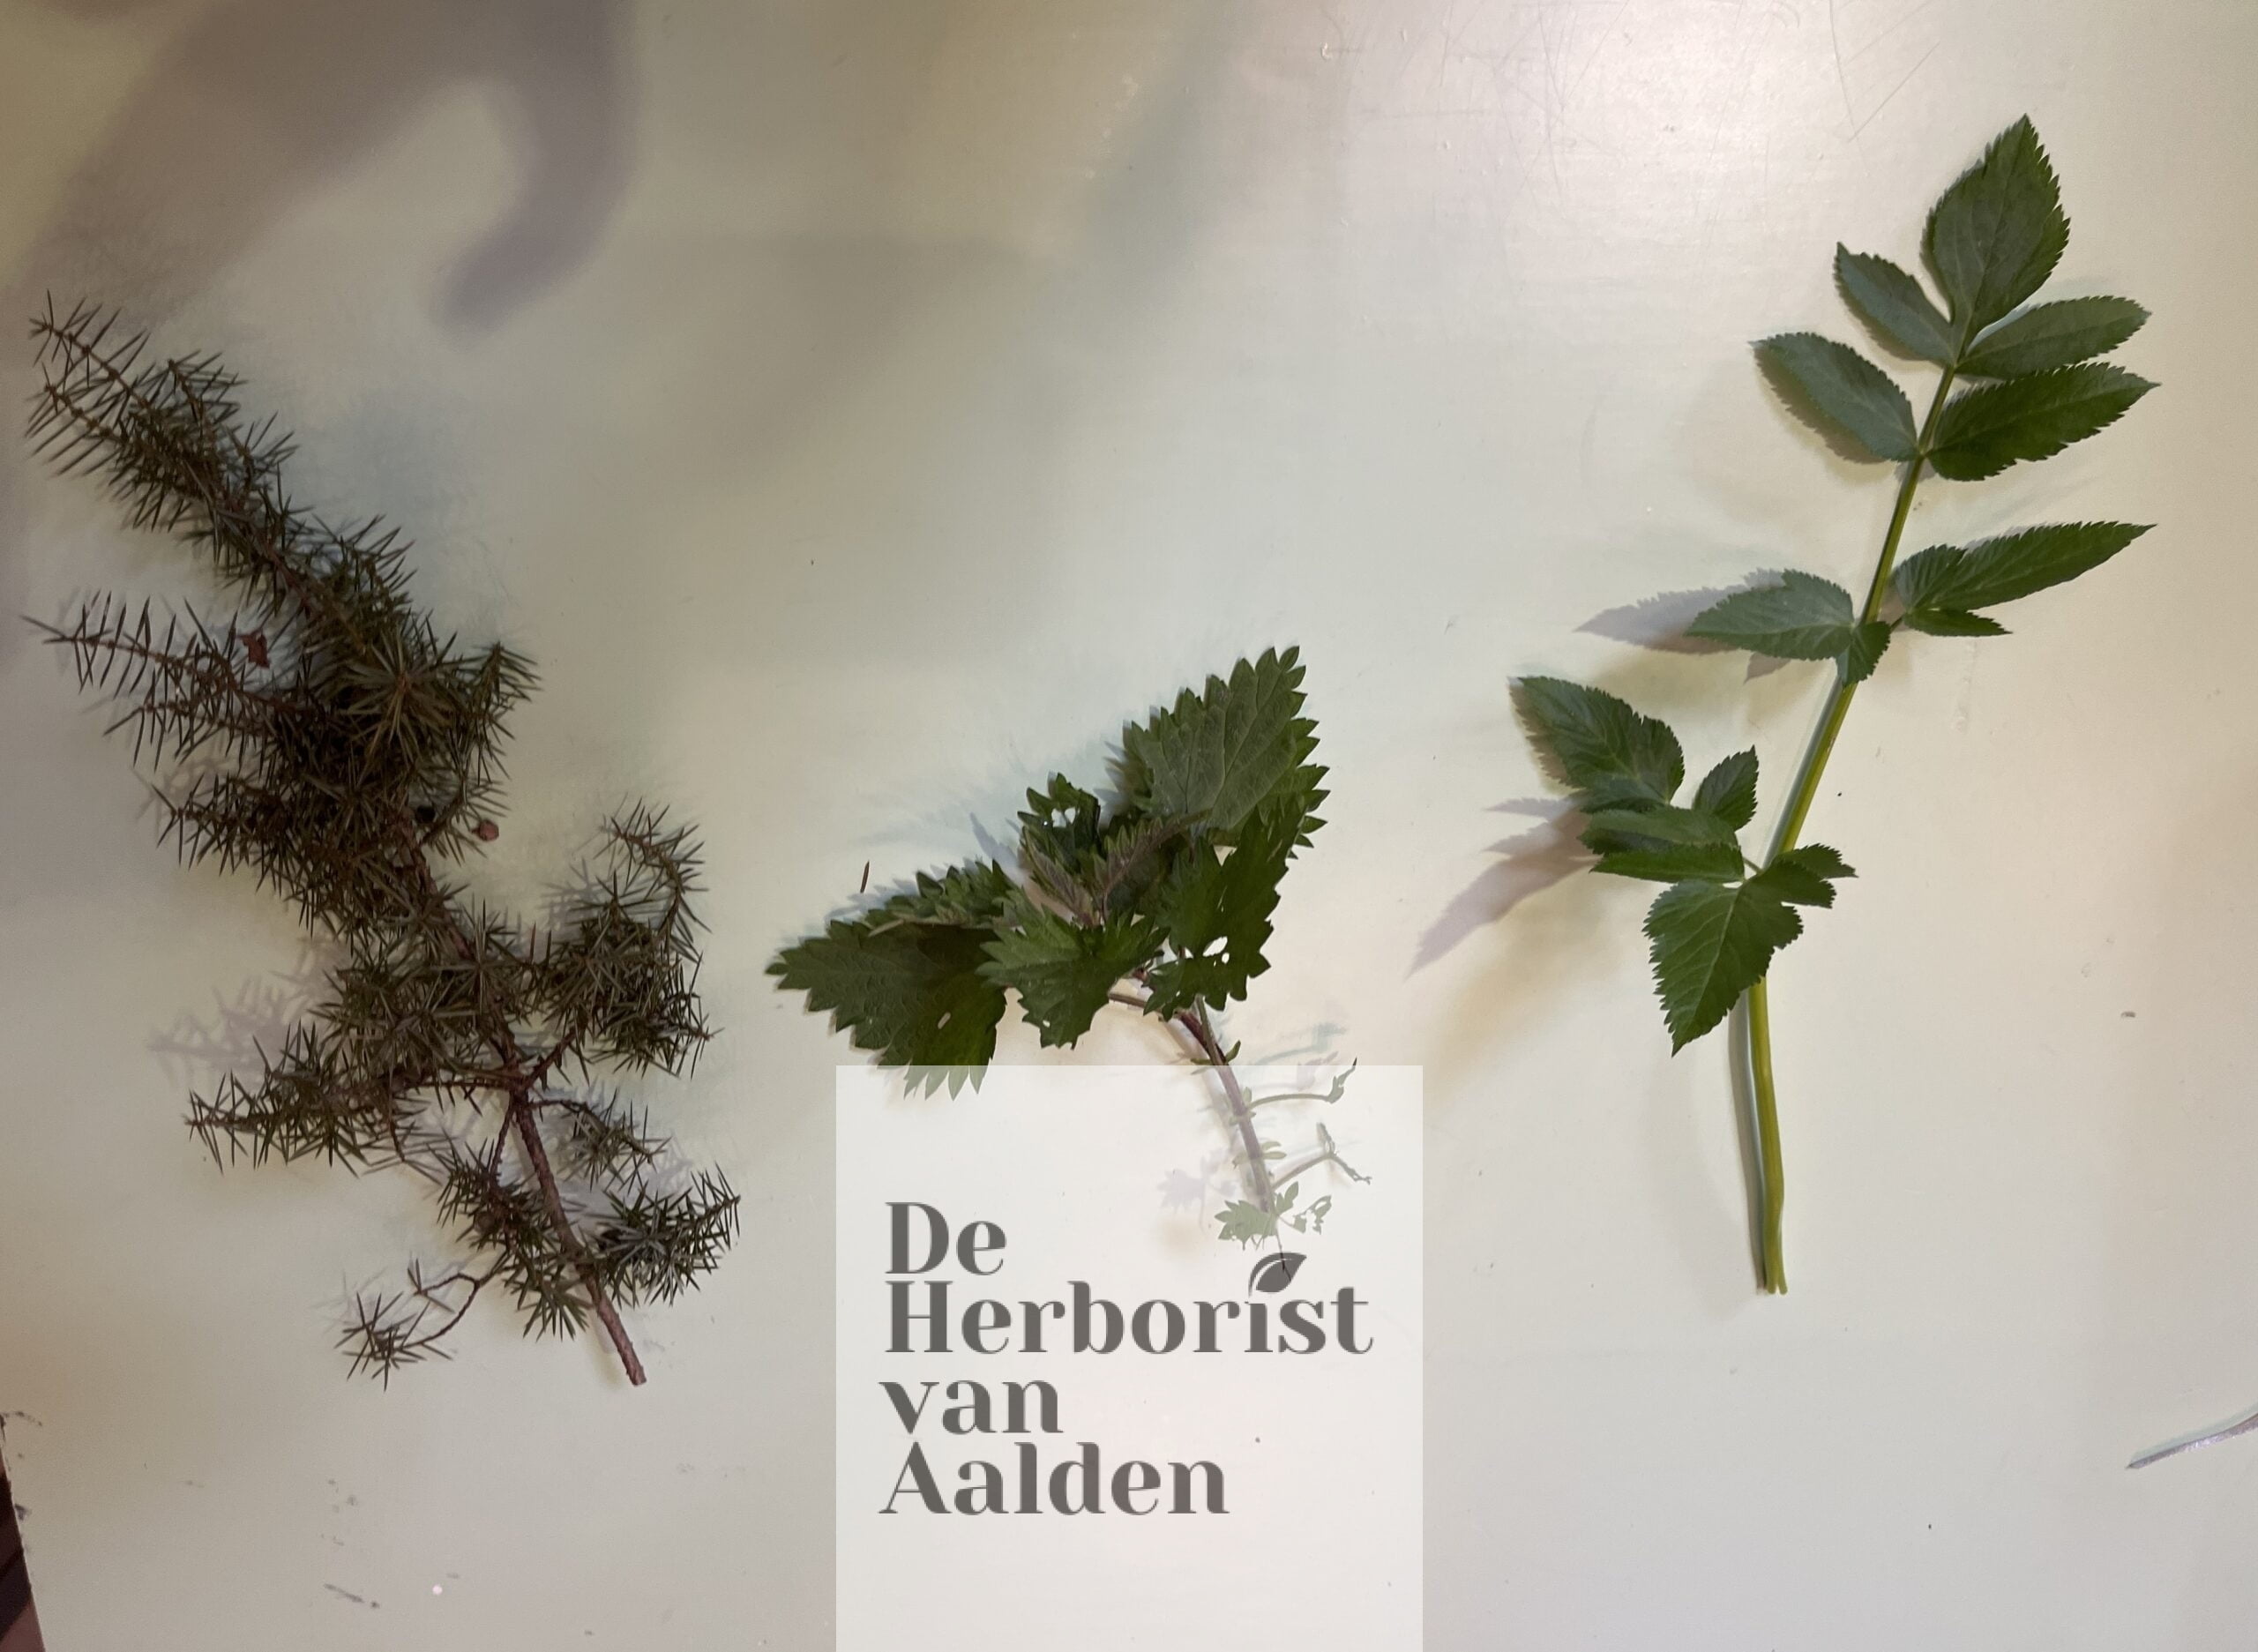 De Herborist van Aalden. vlnr jeneverbes, brandnetel, engelwortel